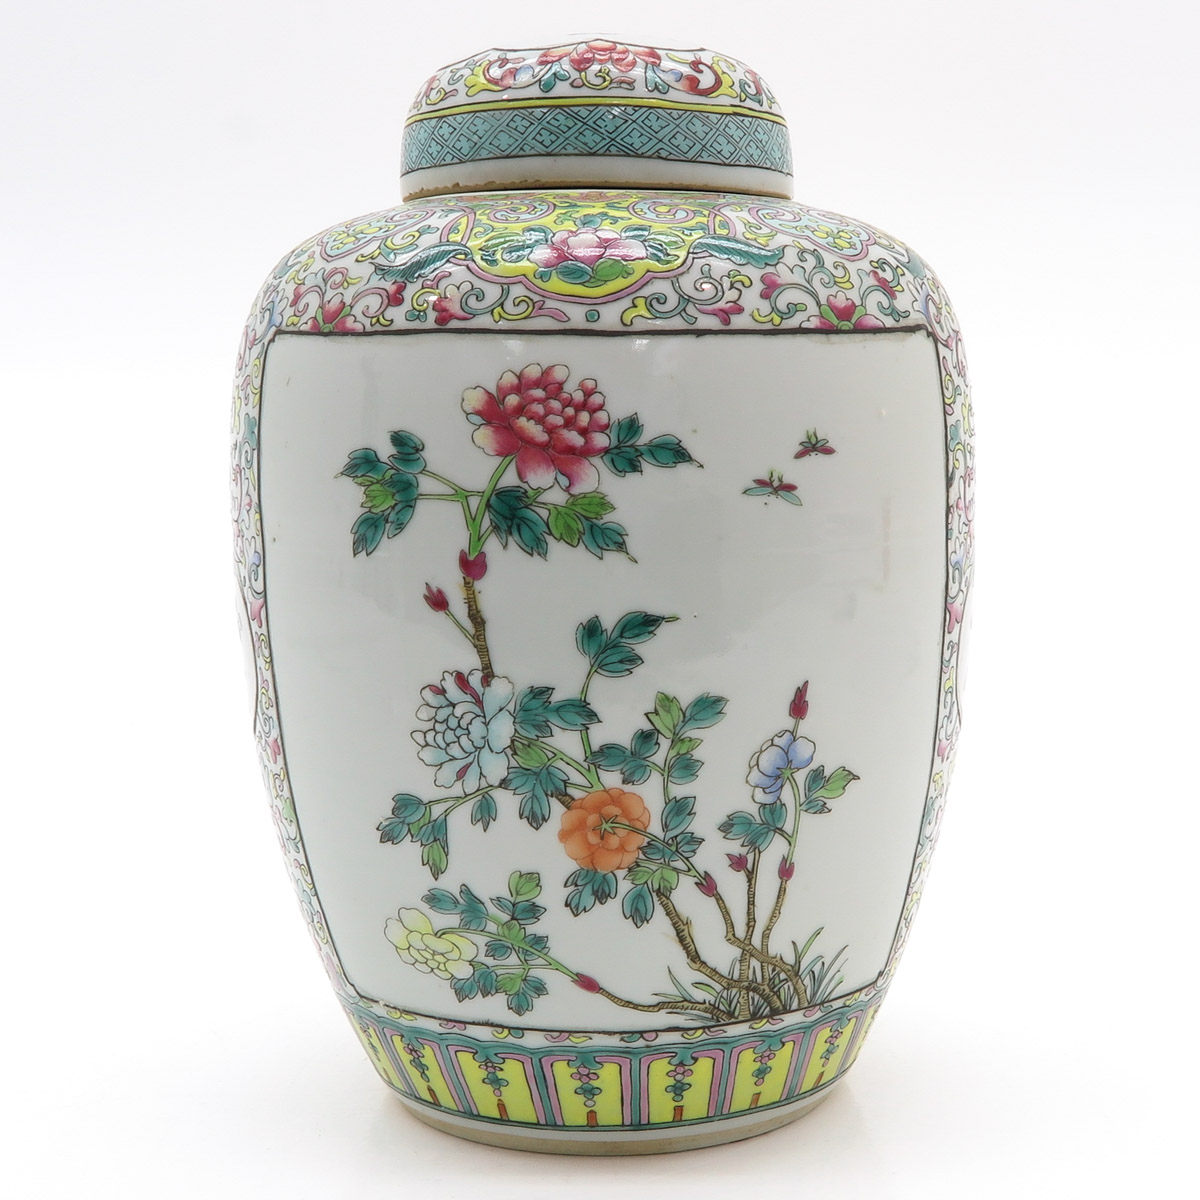 China Porcelain Famille Rose Decor Lidded Jar - Image 3 of 6